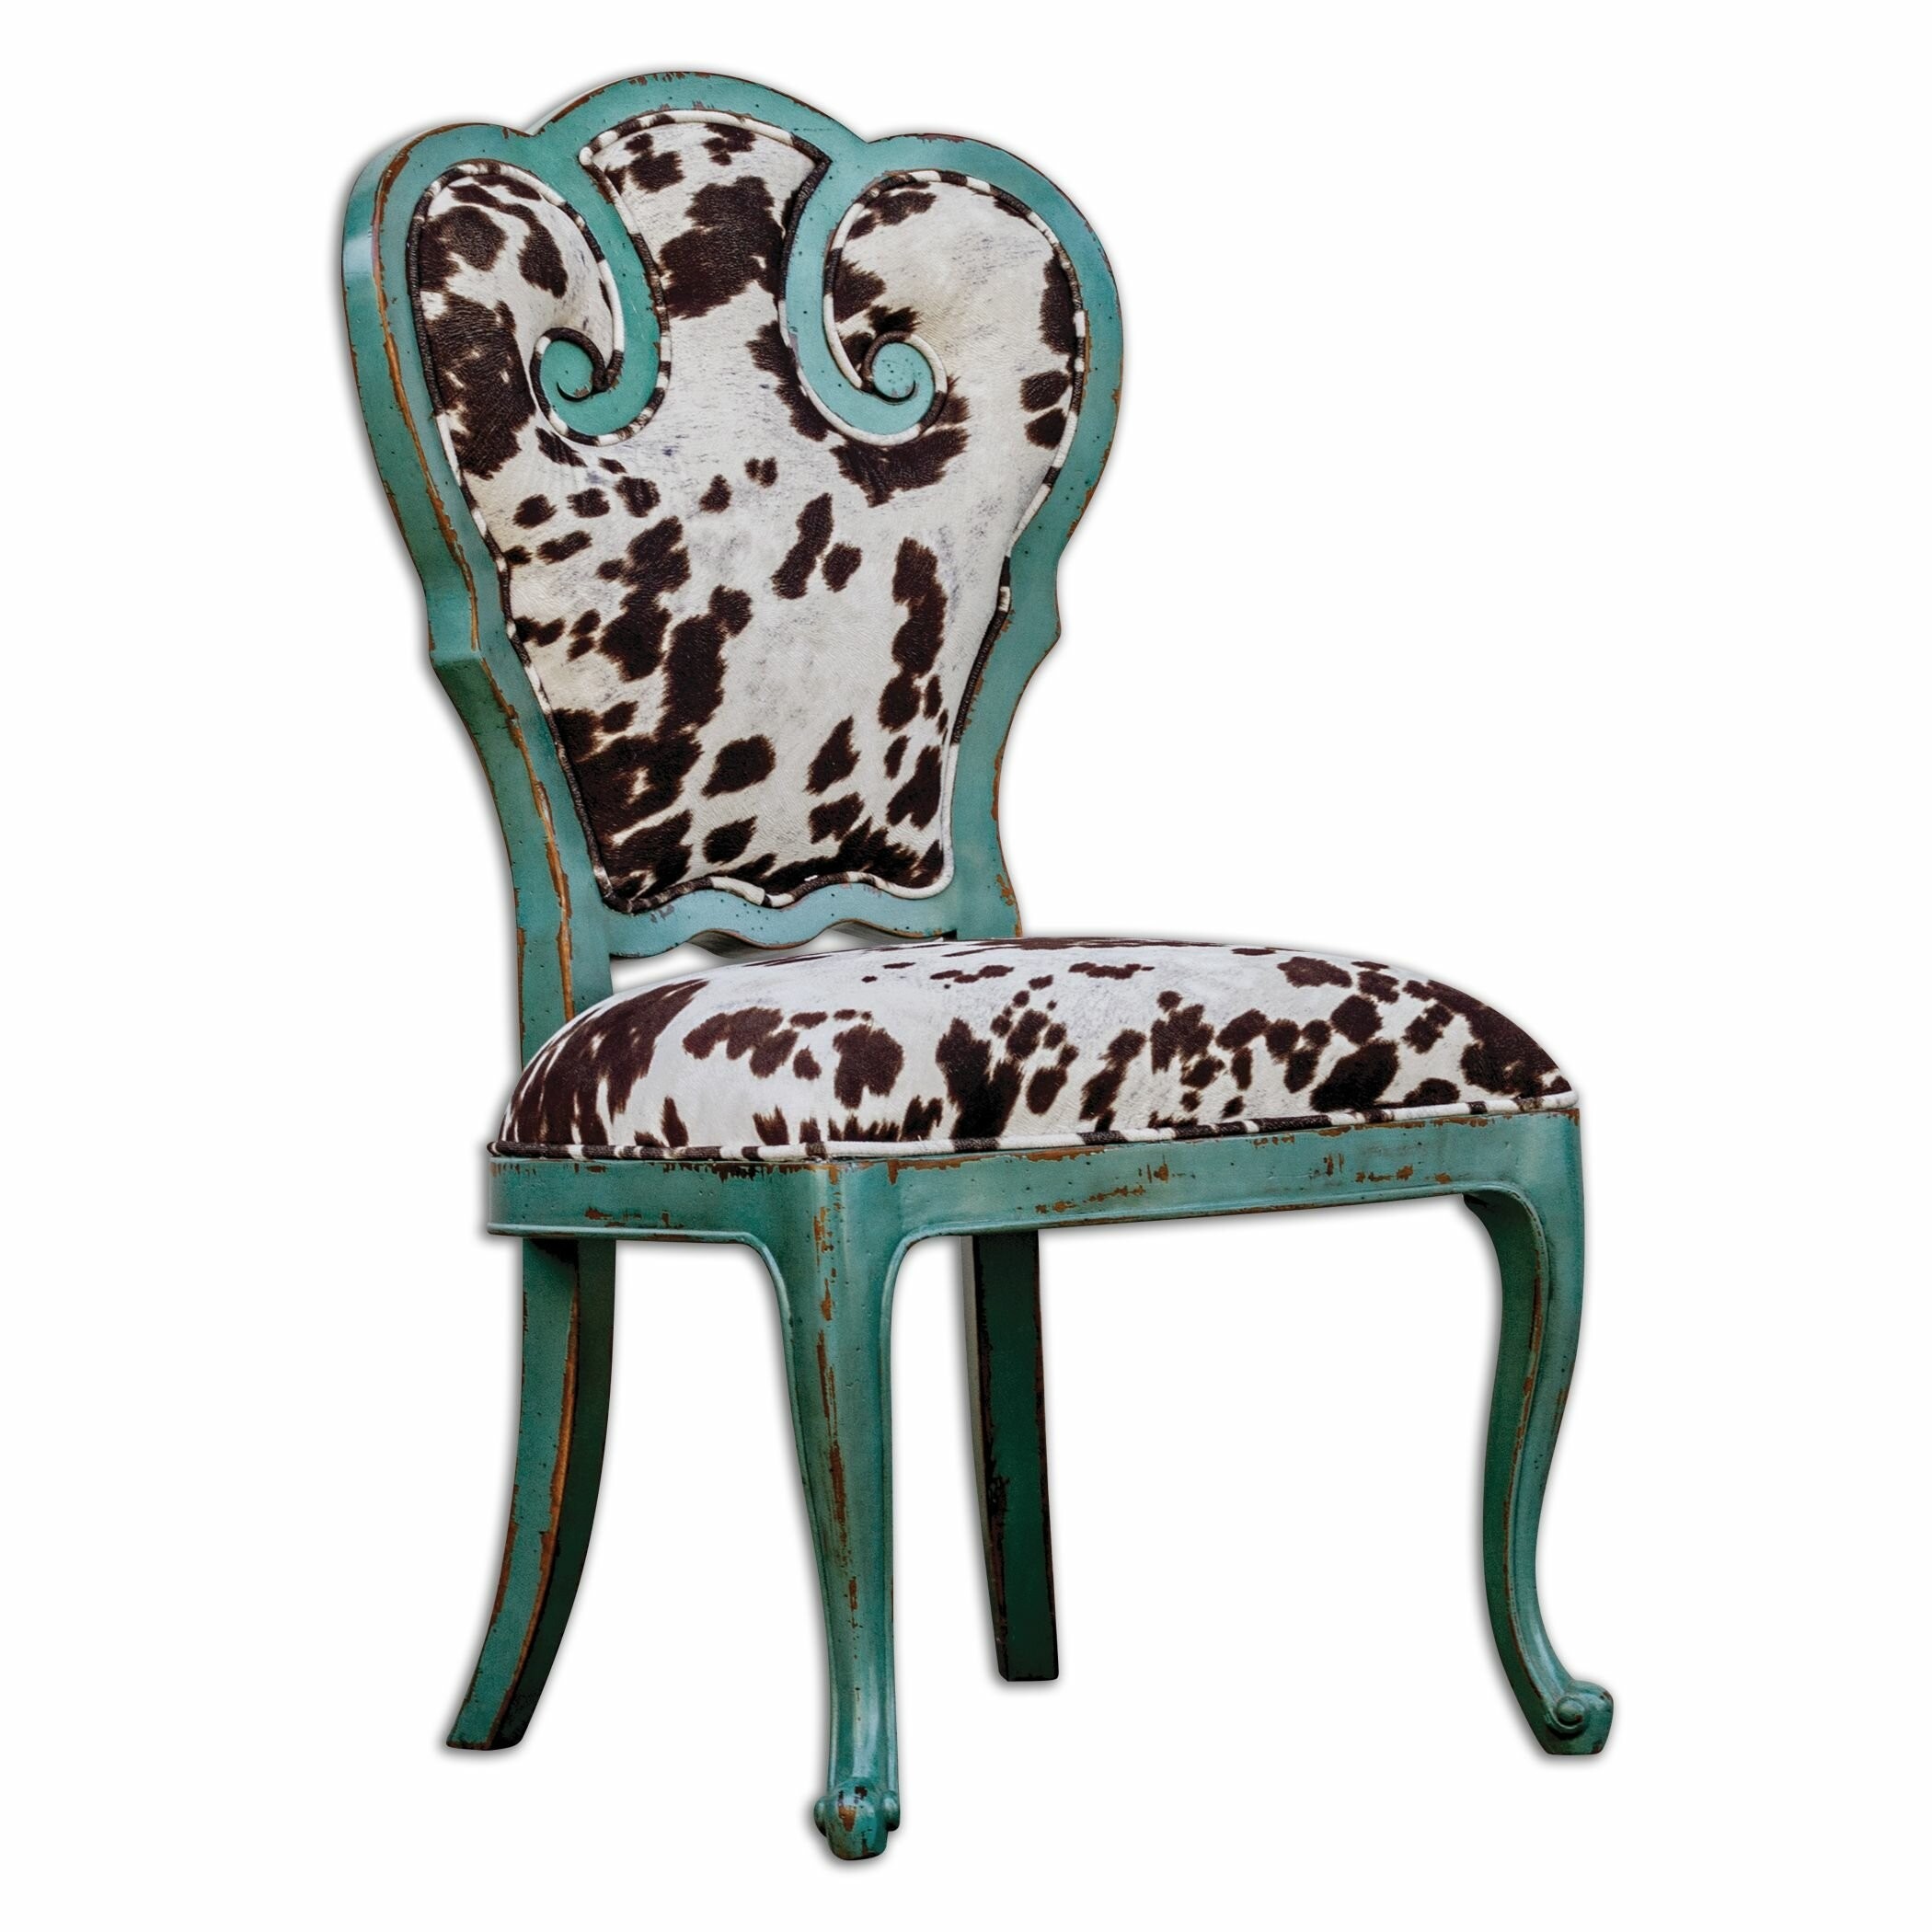 Retro Aqua Blue Scroll Side Chair with Cow Print Cushion